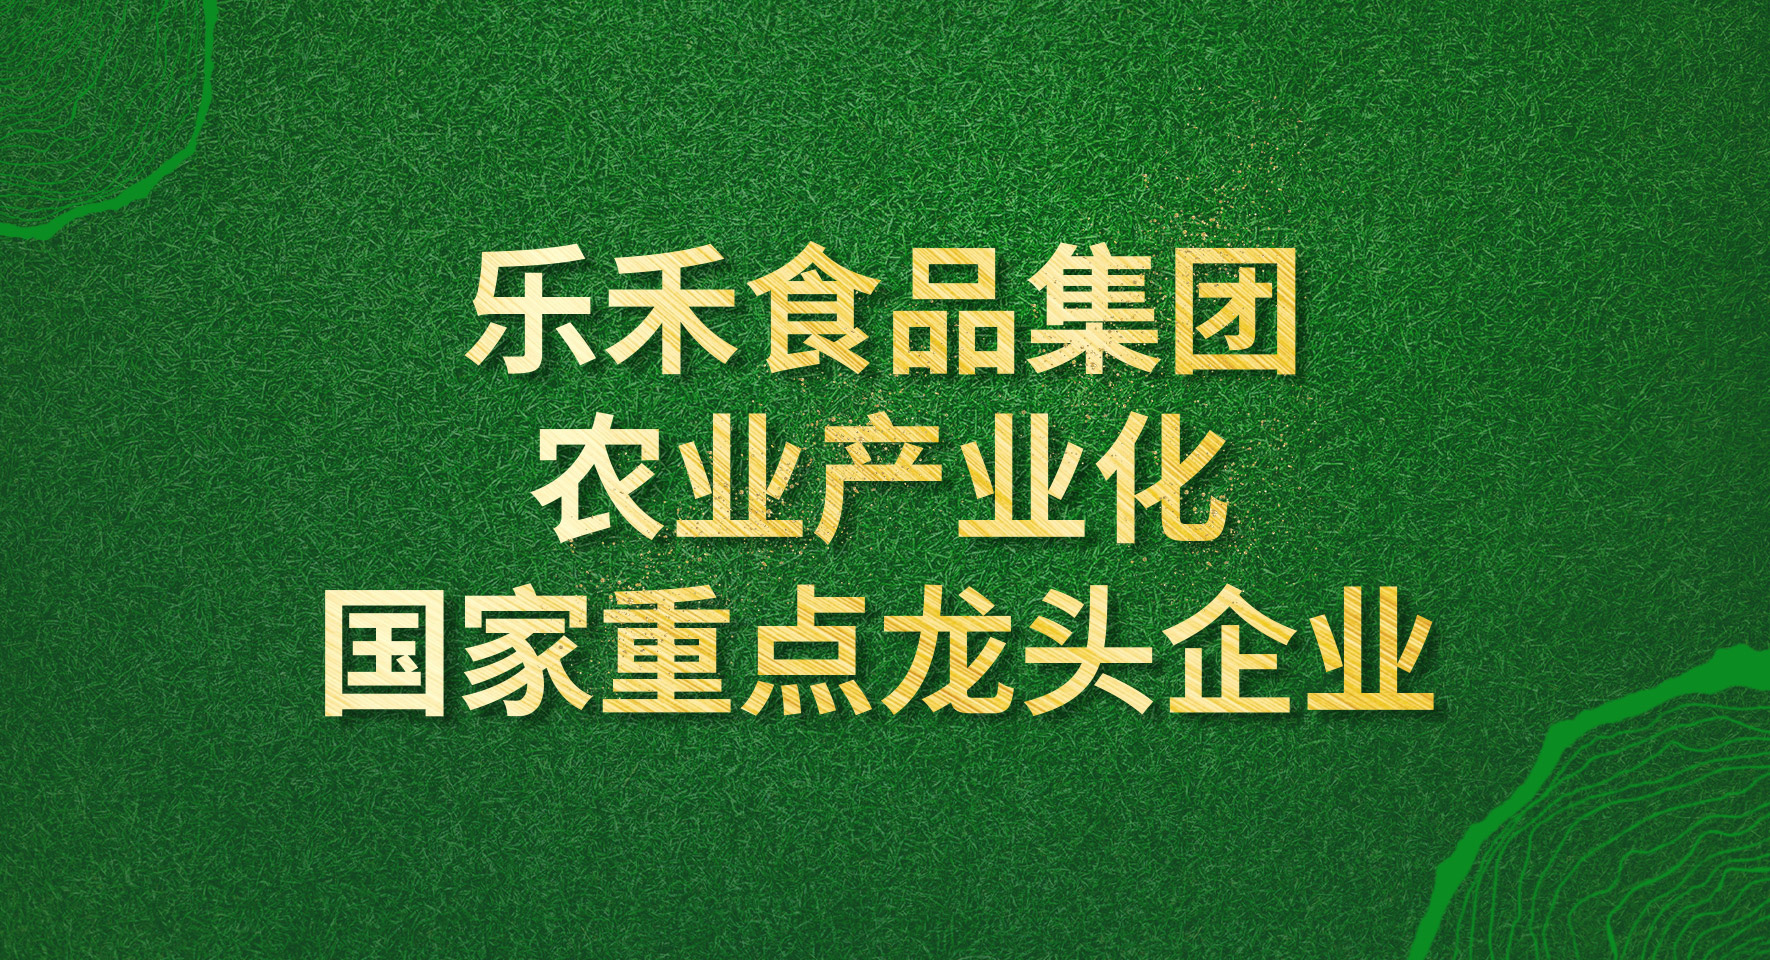 【头条】乐禾入选第七批农业产业化国家重点龙头企业